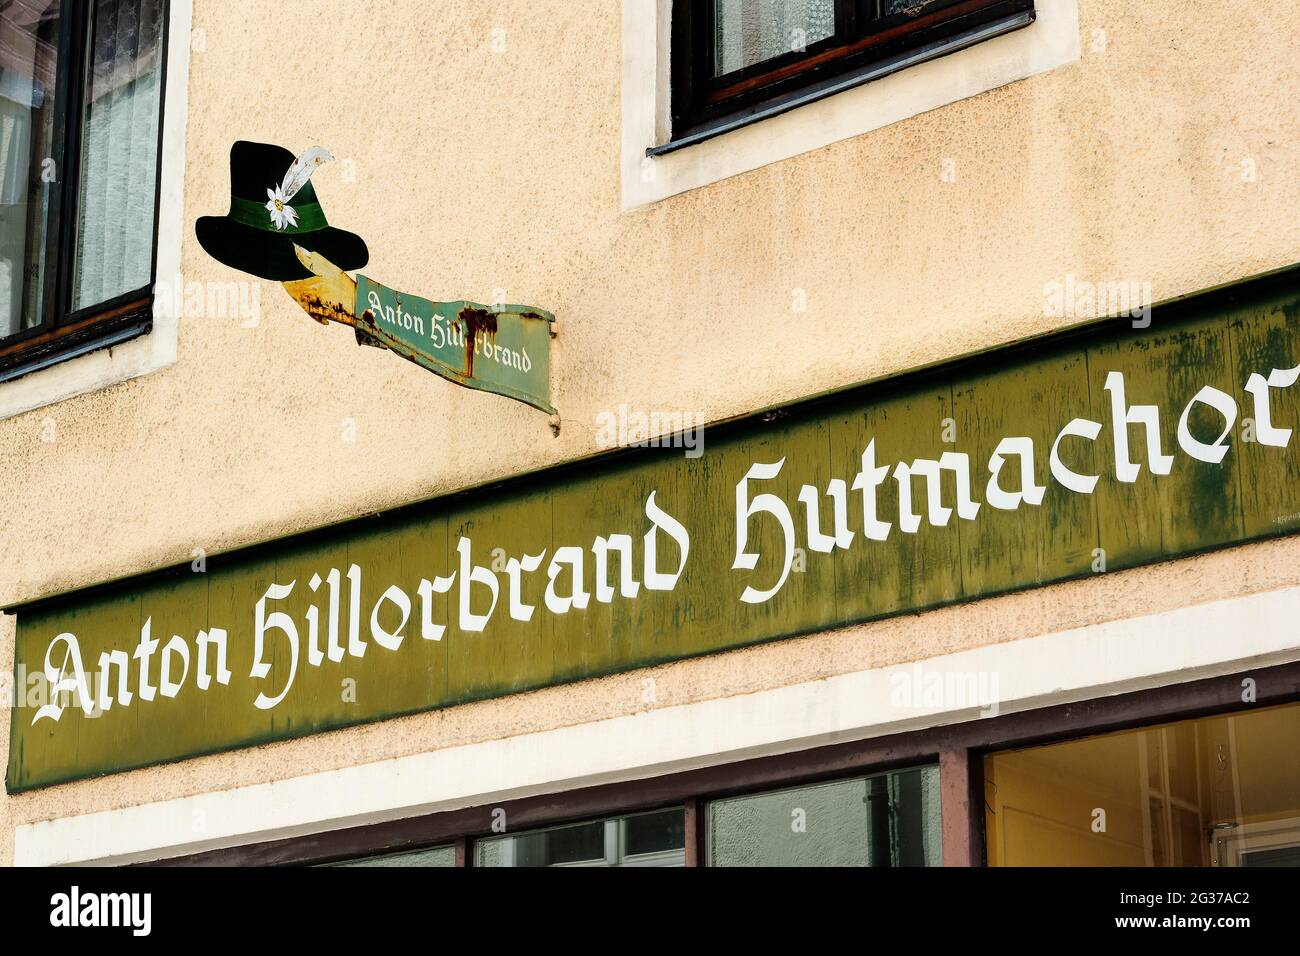 Old nose sign, hatter, Bad Toelz, Upper Bavaria, Bavaria, Germany Stock Photo